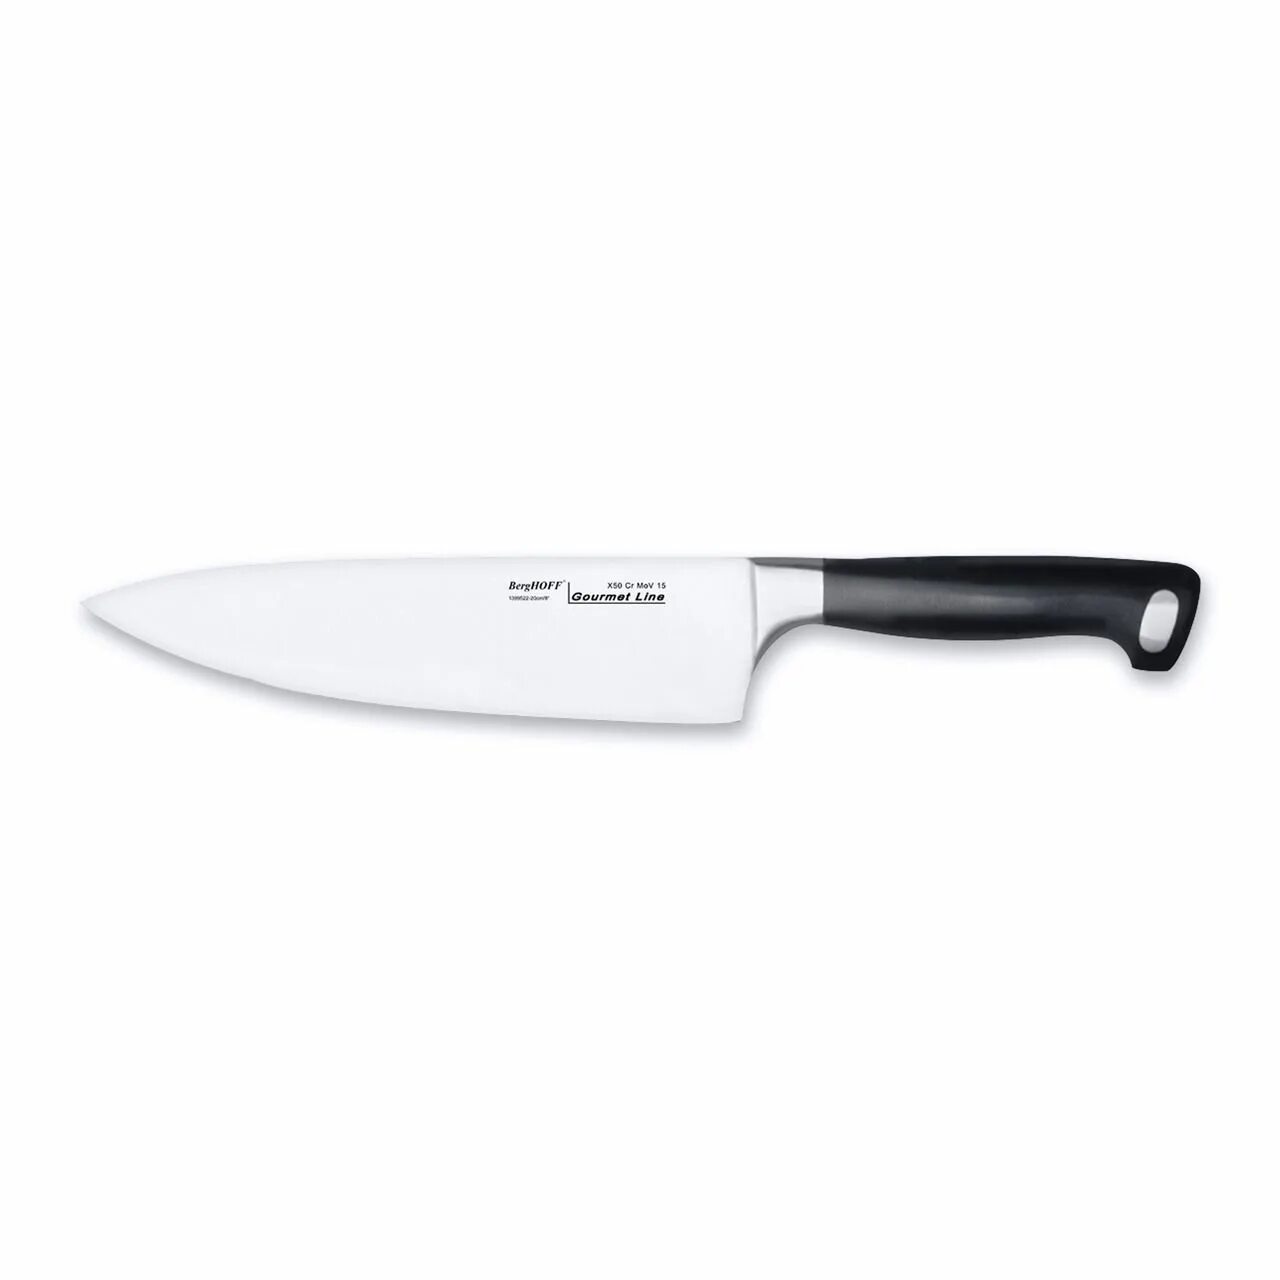 Нож для кухни купить в москве. Нож универсальный 13см Ron BERGHOFF. BERGHOFF нож сантоку 18см Neo. Нож сантоку BERGHOFF Gourmet. BERGHOFF нож сантоку Gourmet 18 см.